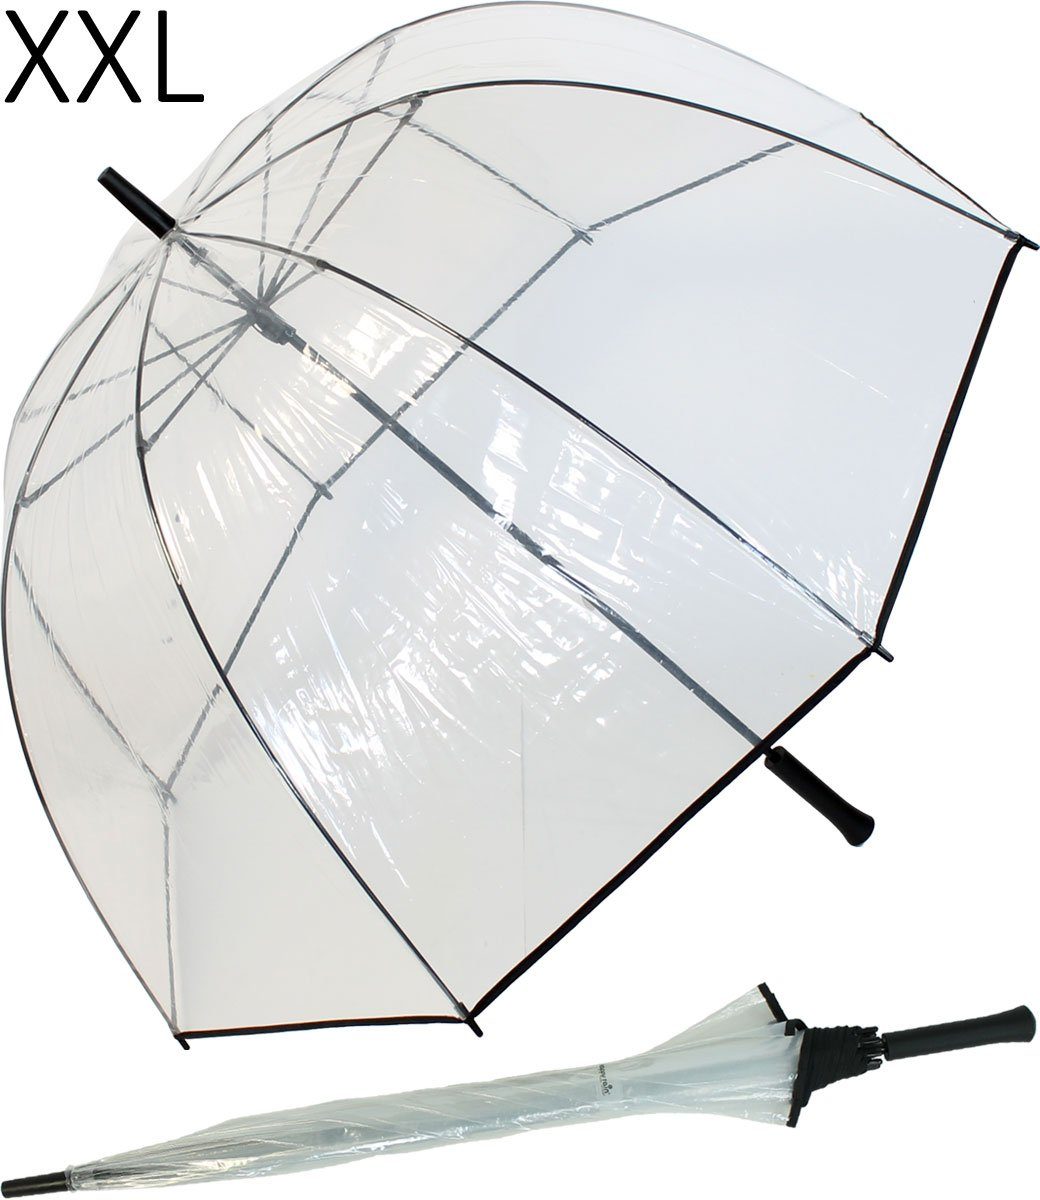 HAPPY RAIN Golfregenschirm XXL Glockenschirm transparent sehr groß, durchsichtig - schützt die Frisur